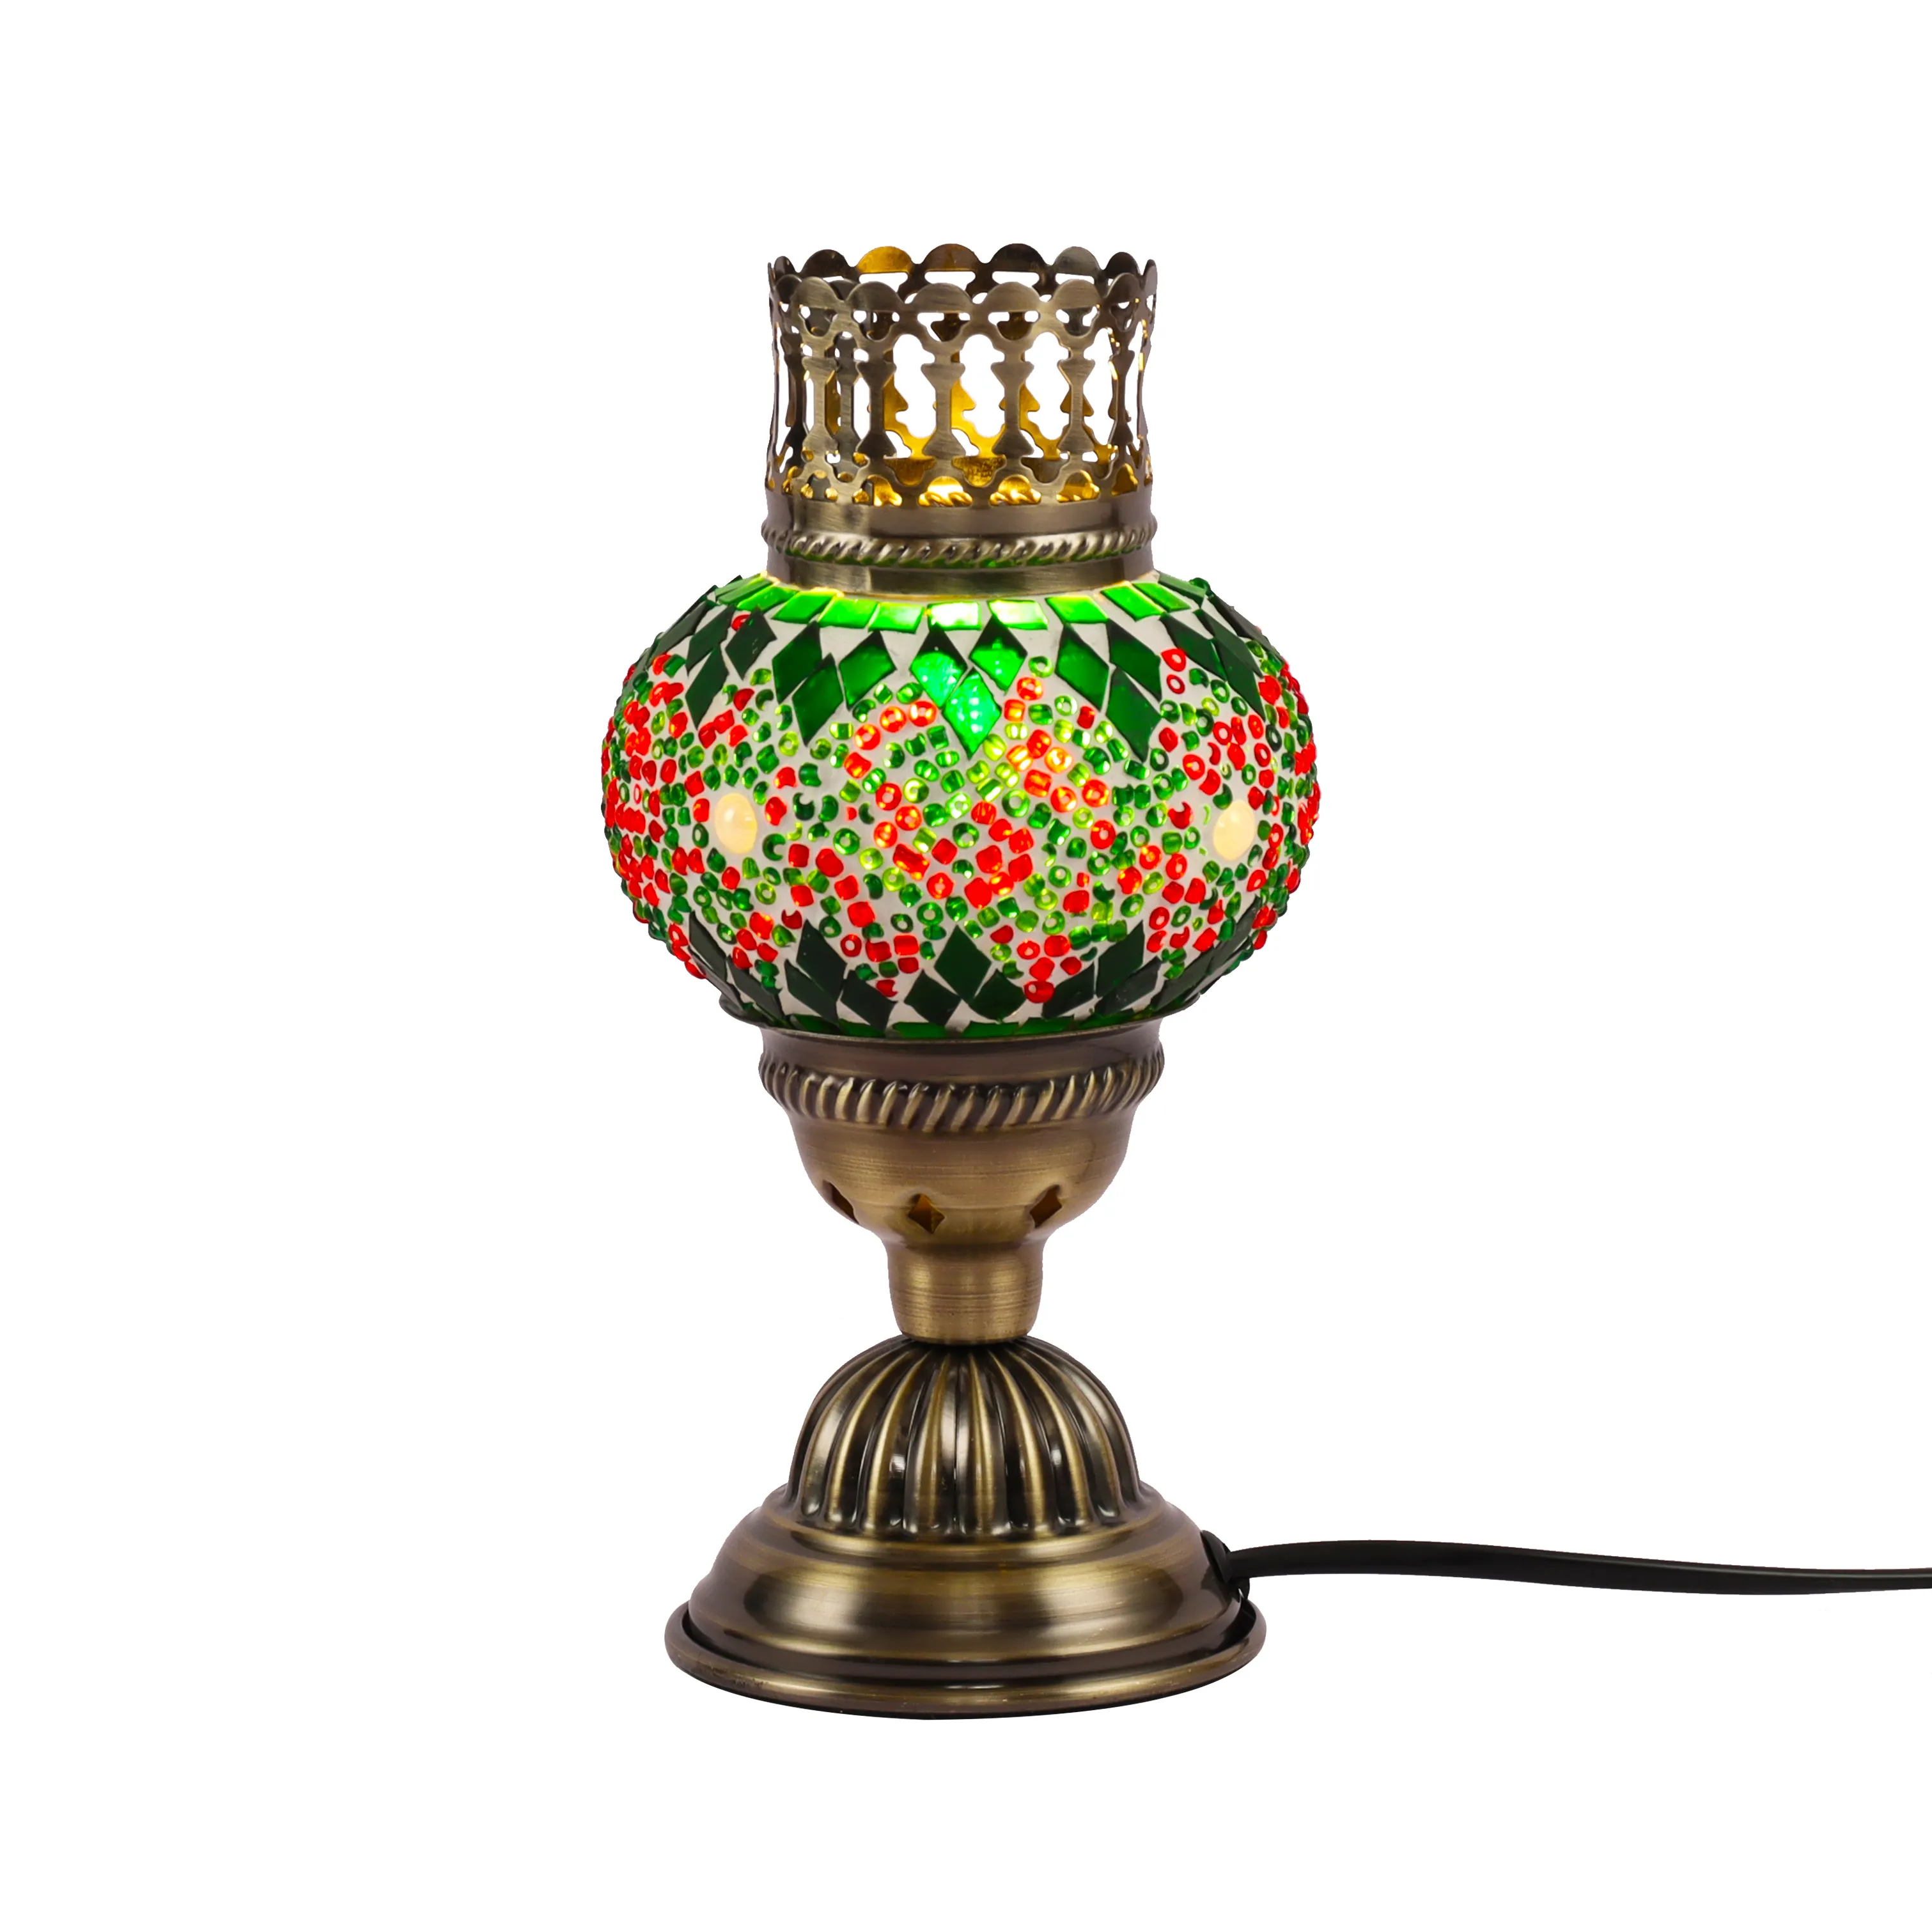 Syadi Lighting estilo turco estilo bohemio lámpara de mesa de mosaico hecha a mano lámpara de mesa DIY para decoración de Navidad